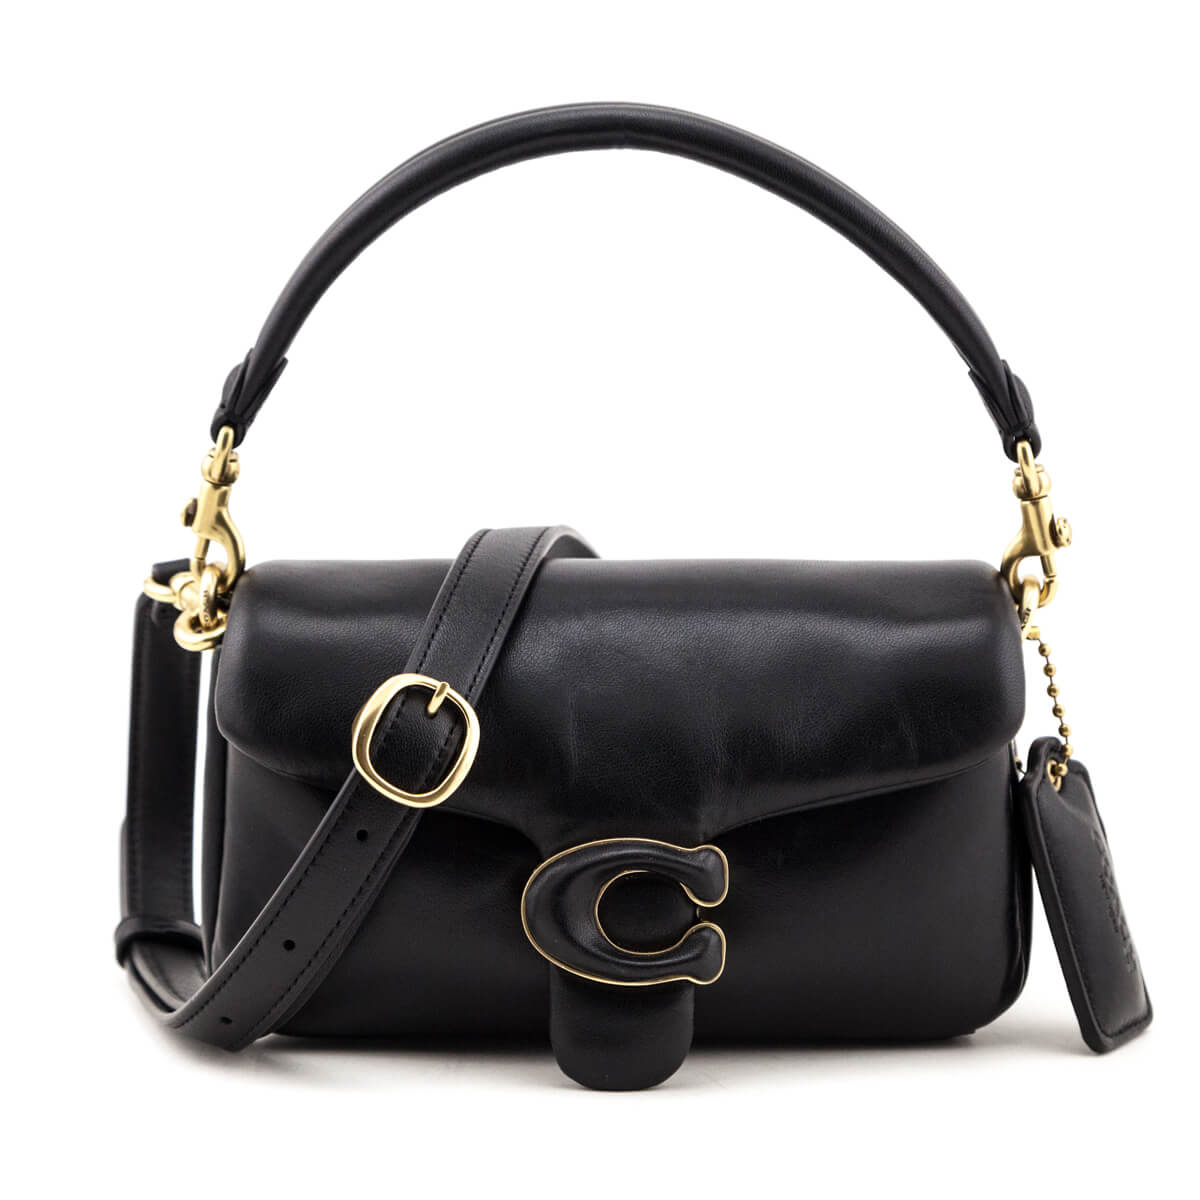 Authentic Designer Handbags (Lubbock) | Facebook